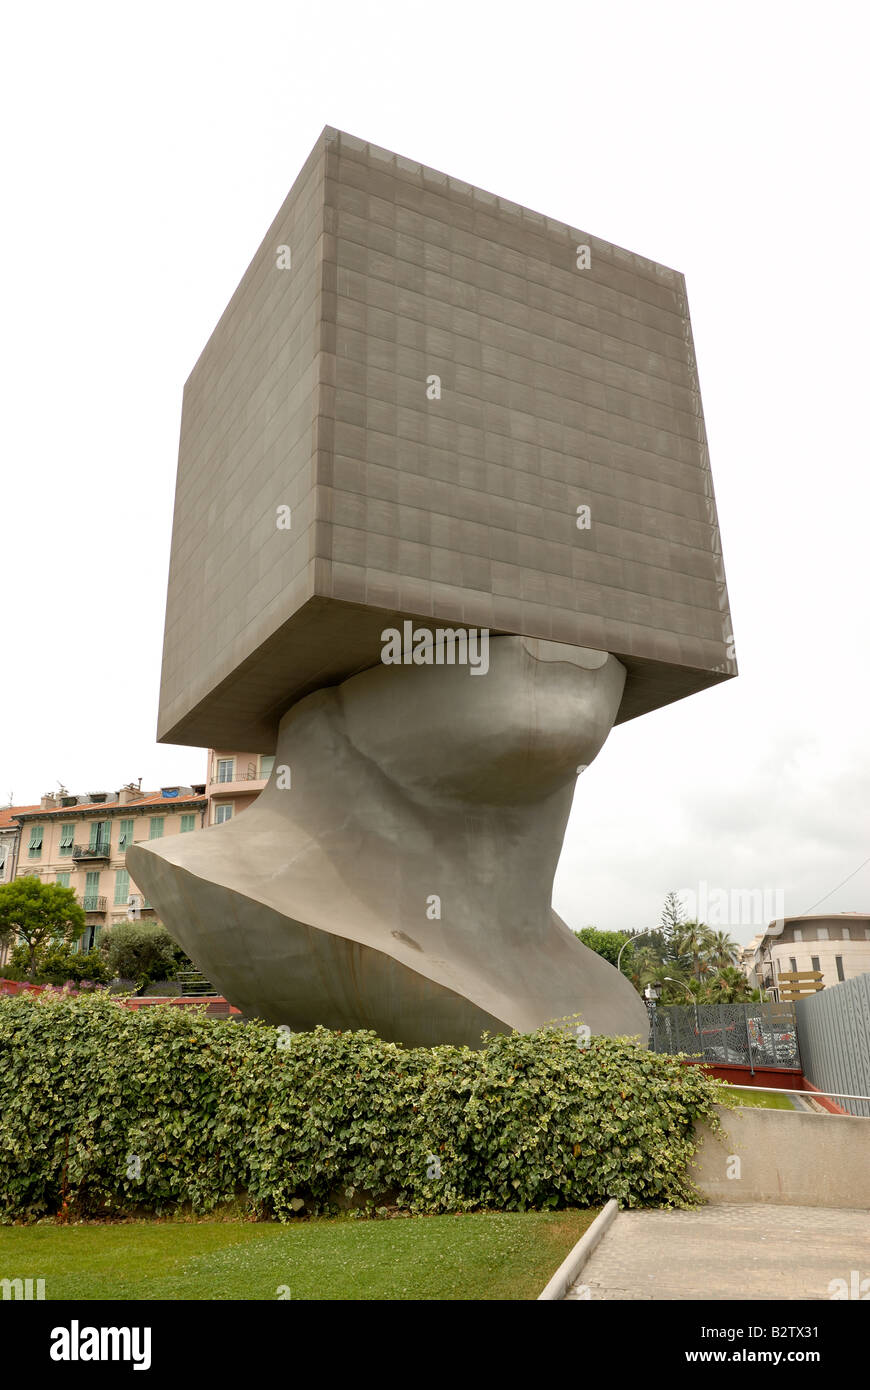 Tete au Carre (squared head), une sculpture en aluminium dans les jardins du MAMAC, Nice, France Banque D'Images